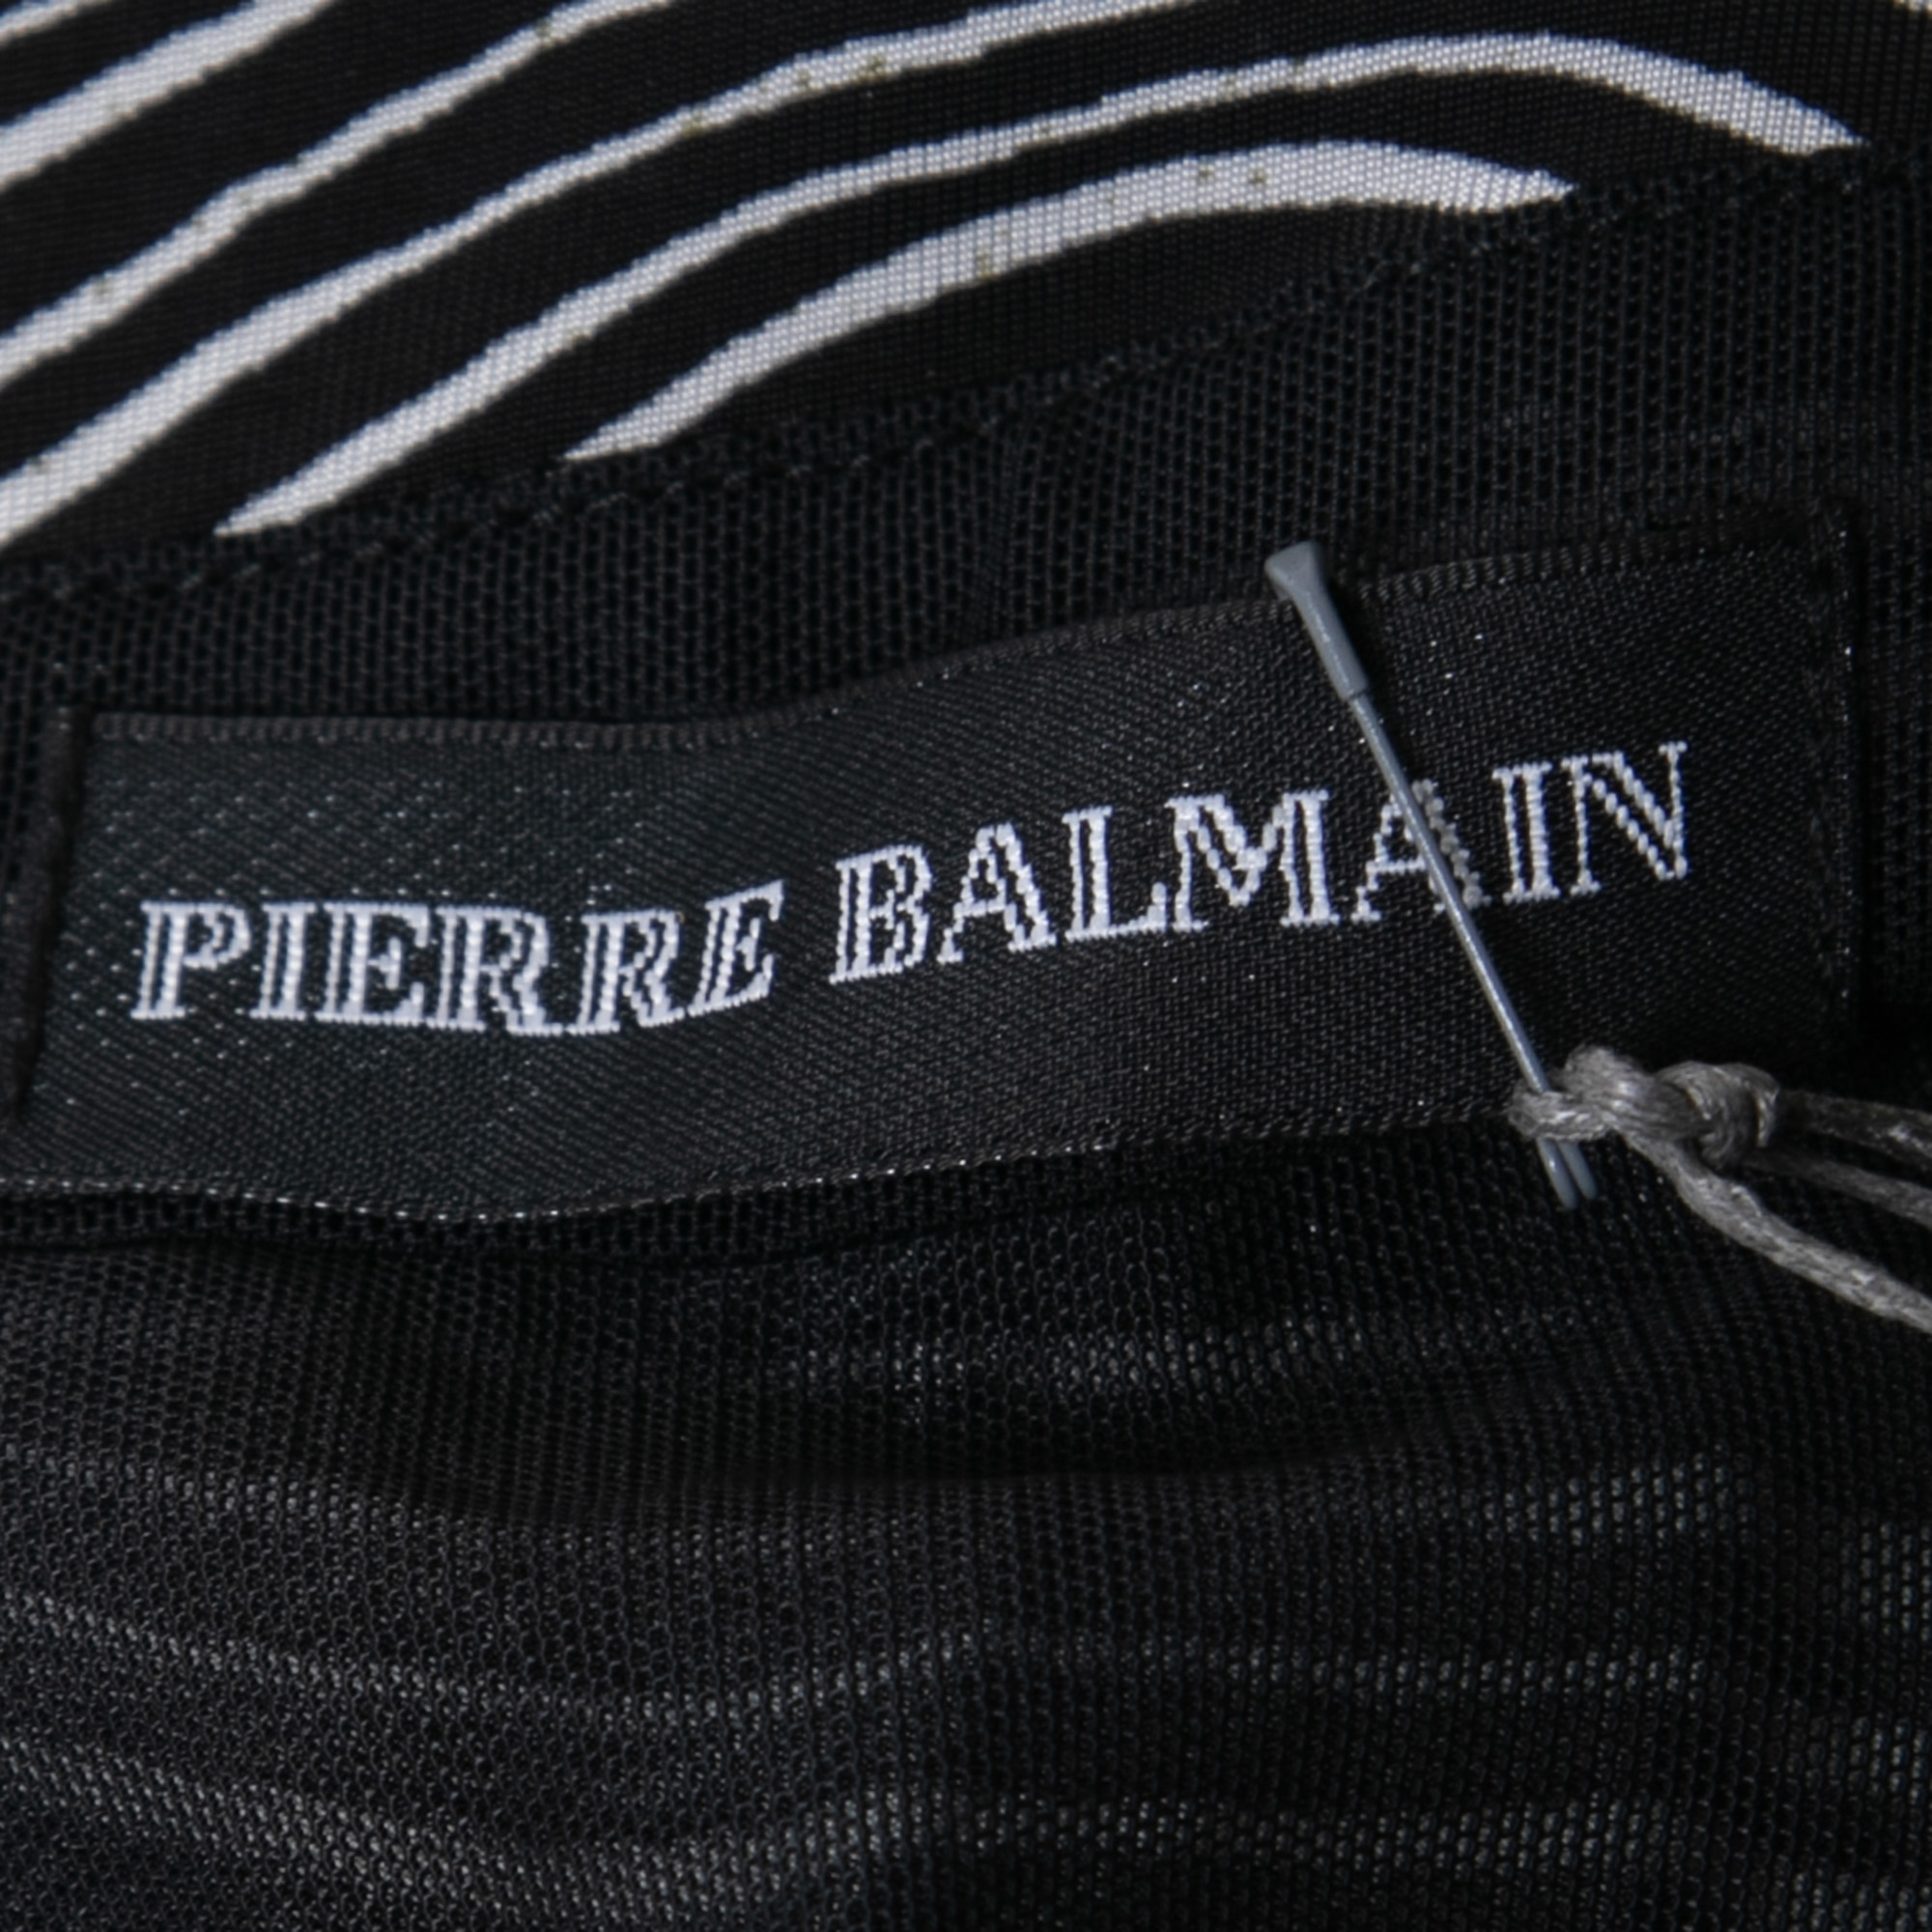 Pierre Balmain Black And White Stretch Zebra Print Draped Jersey Mini Dress L